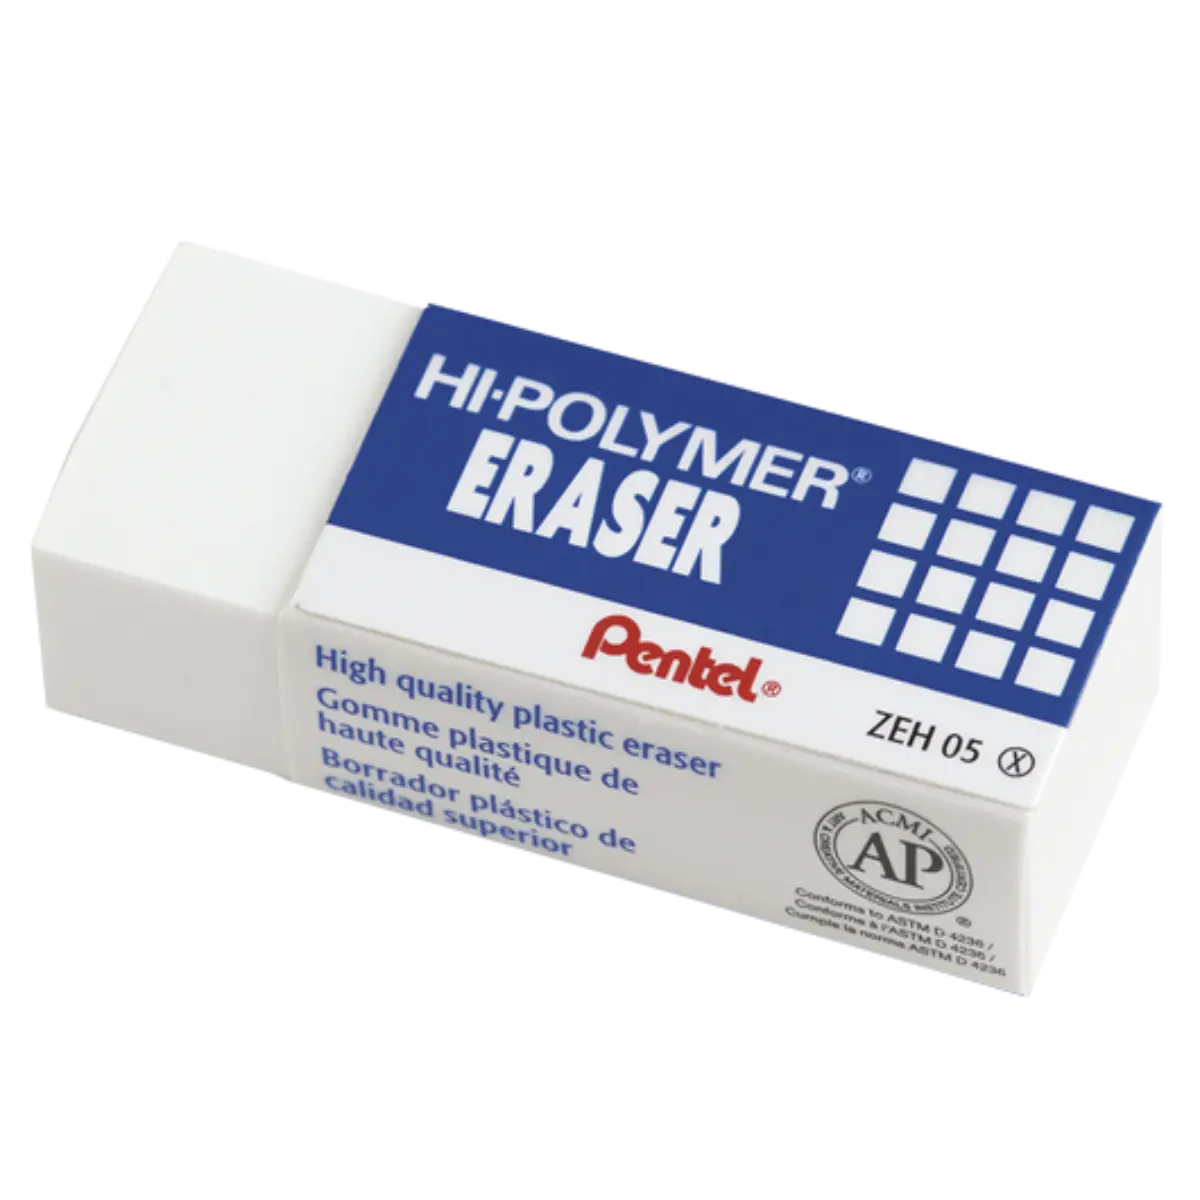 Hi-Polymer Eraser by Pentel